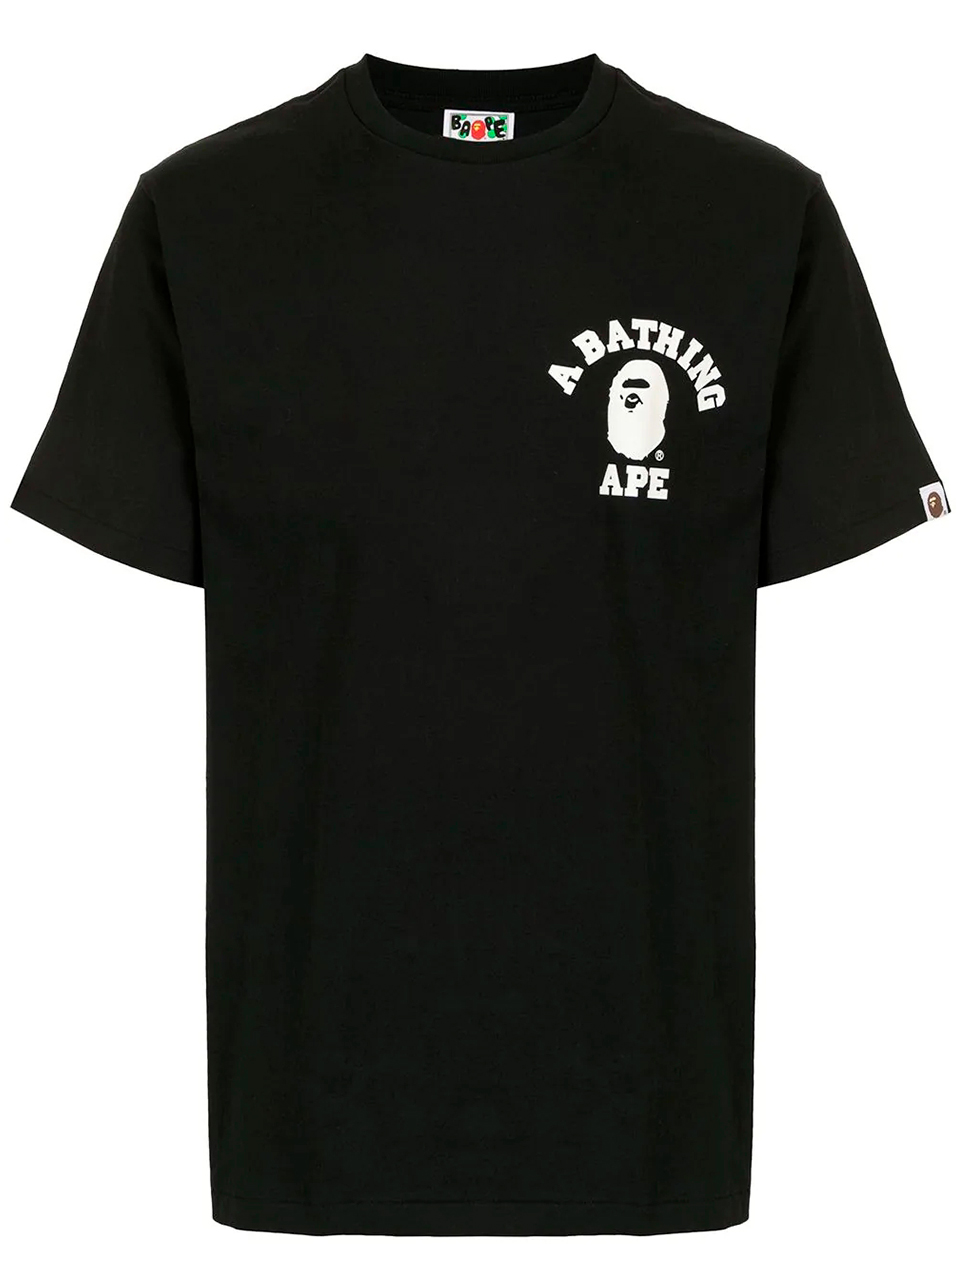 Imagem de: Camiseta BAPE Preta com Logo Pequeno Branco